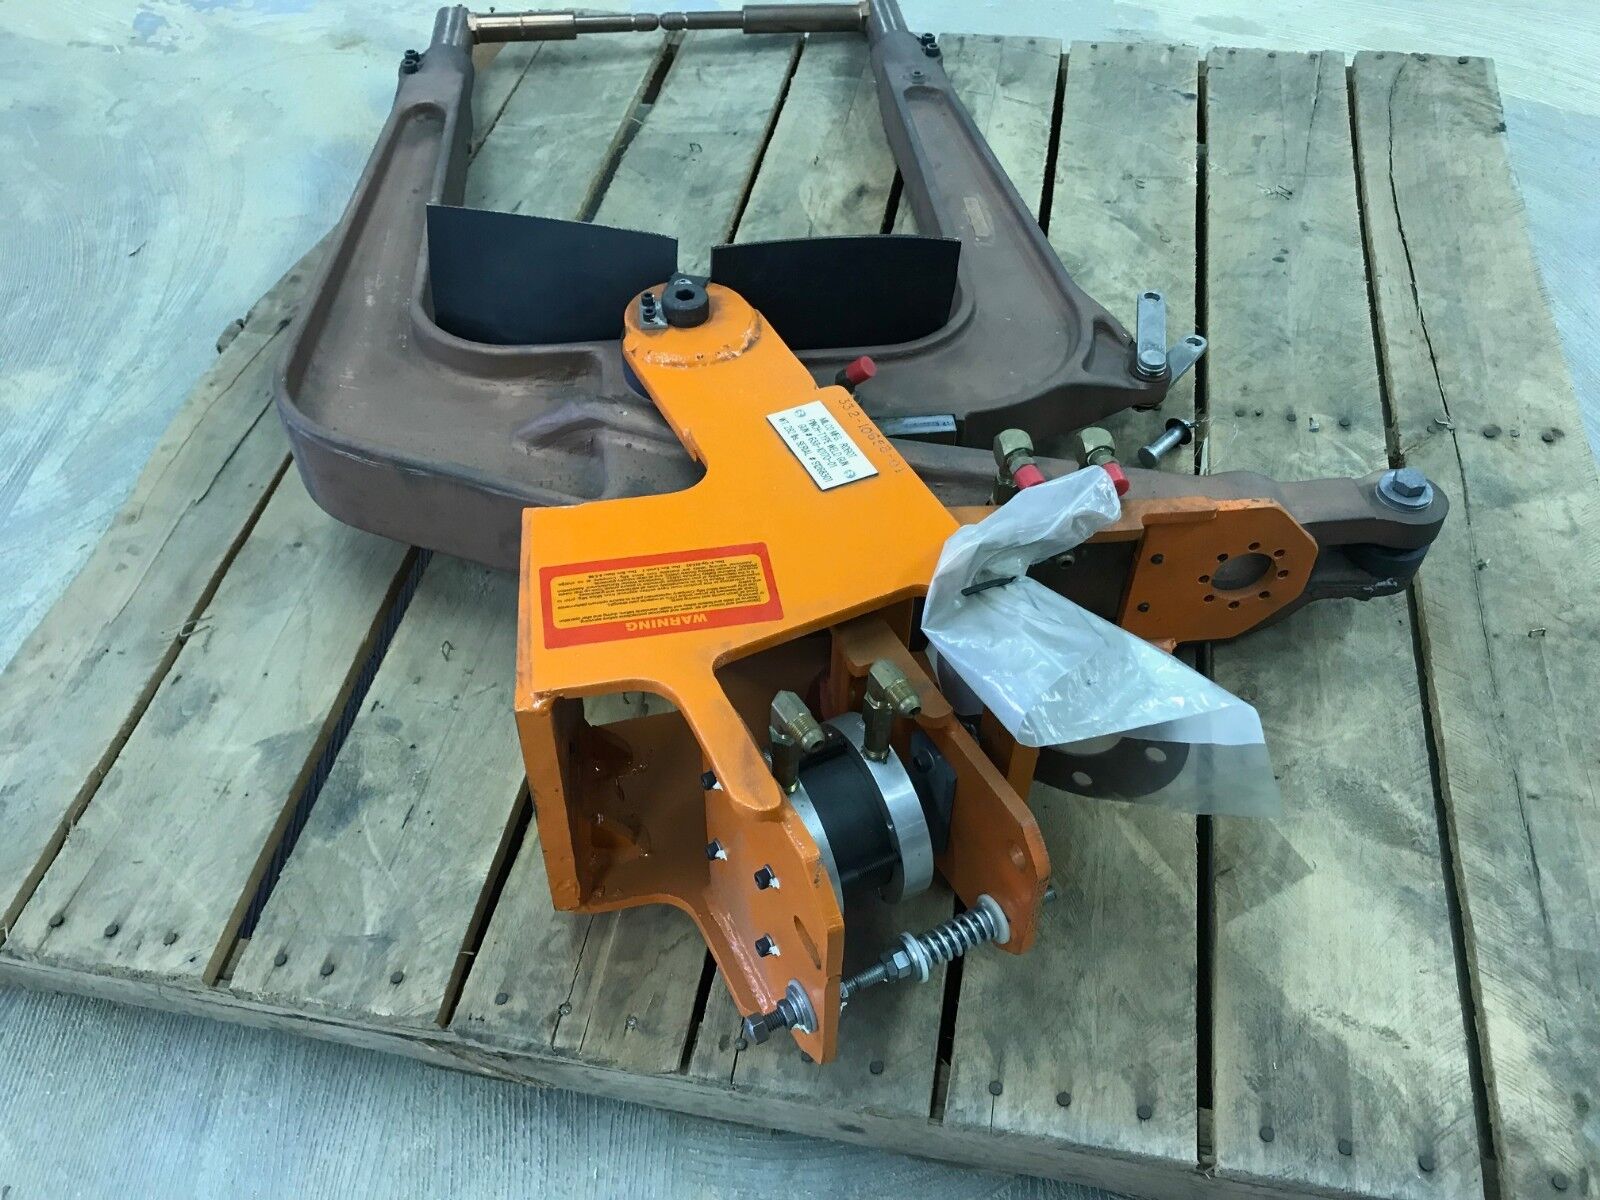 Milco MFG. 638-10170-01 Robot Pinch-Type Spot Weld Gun Robotic Welding